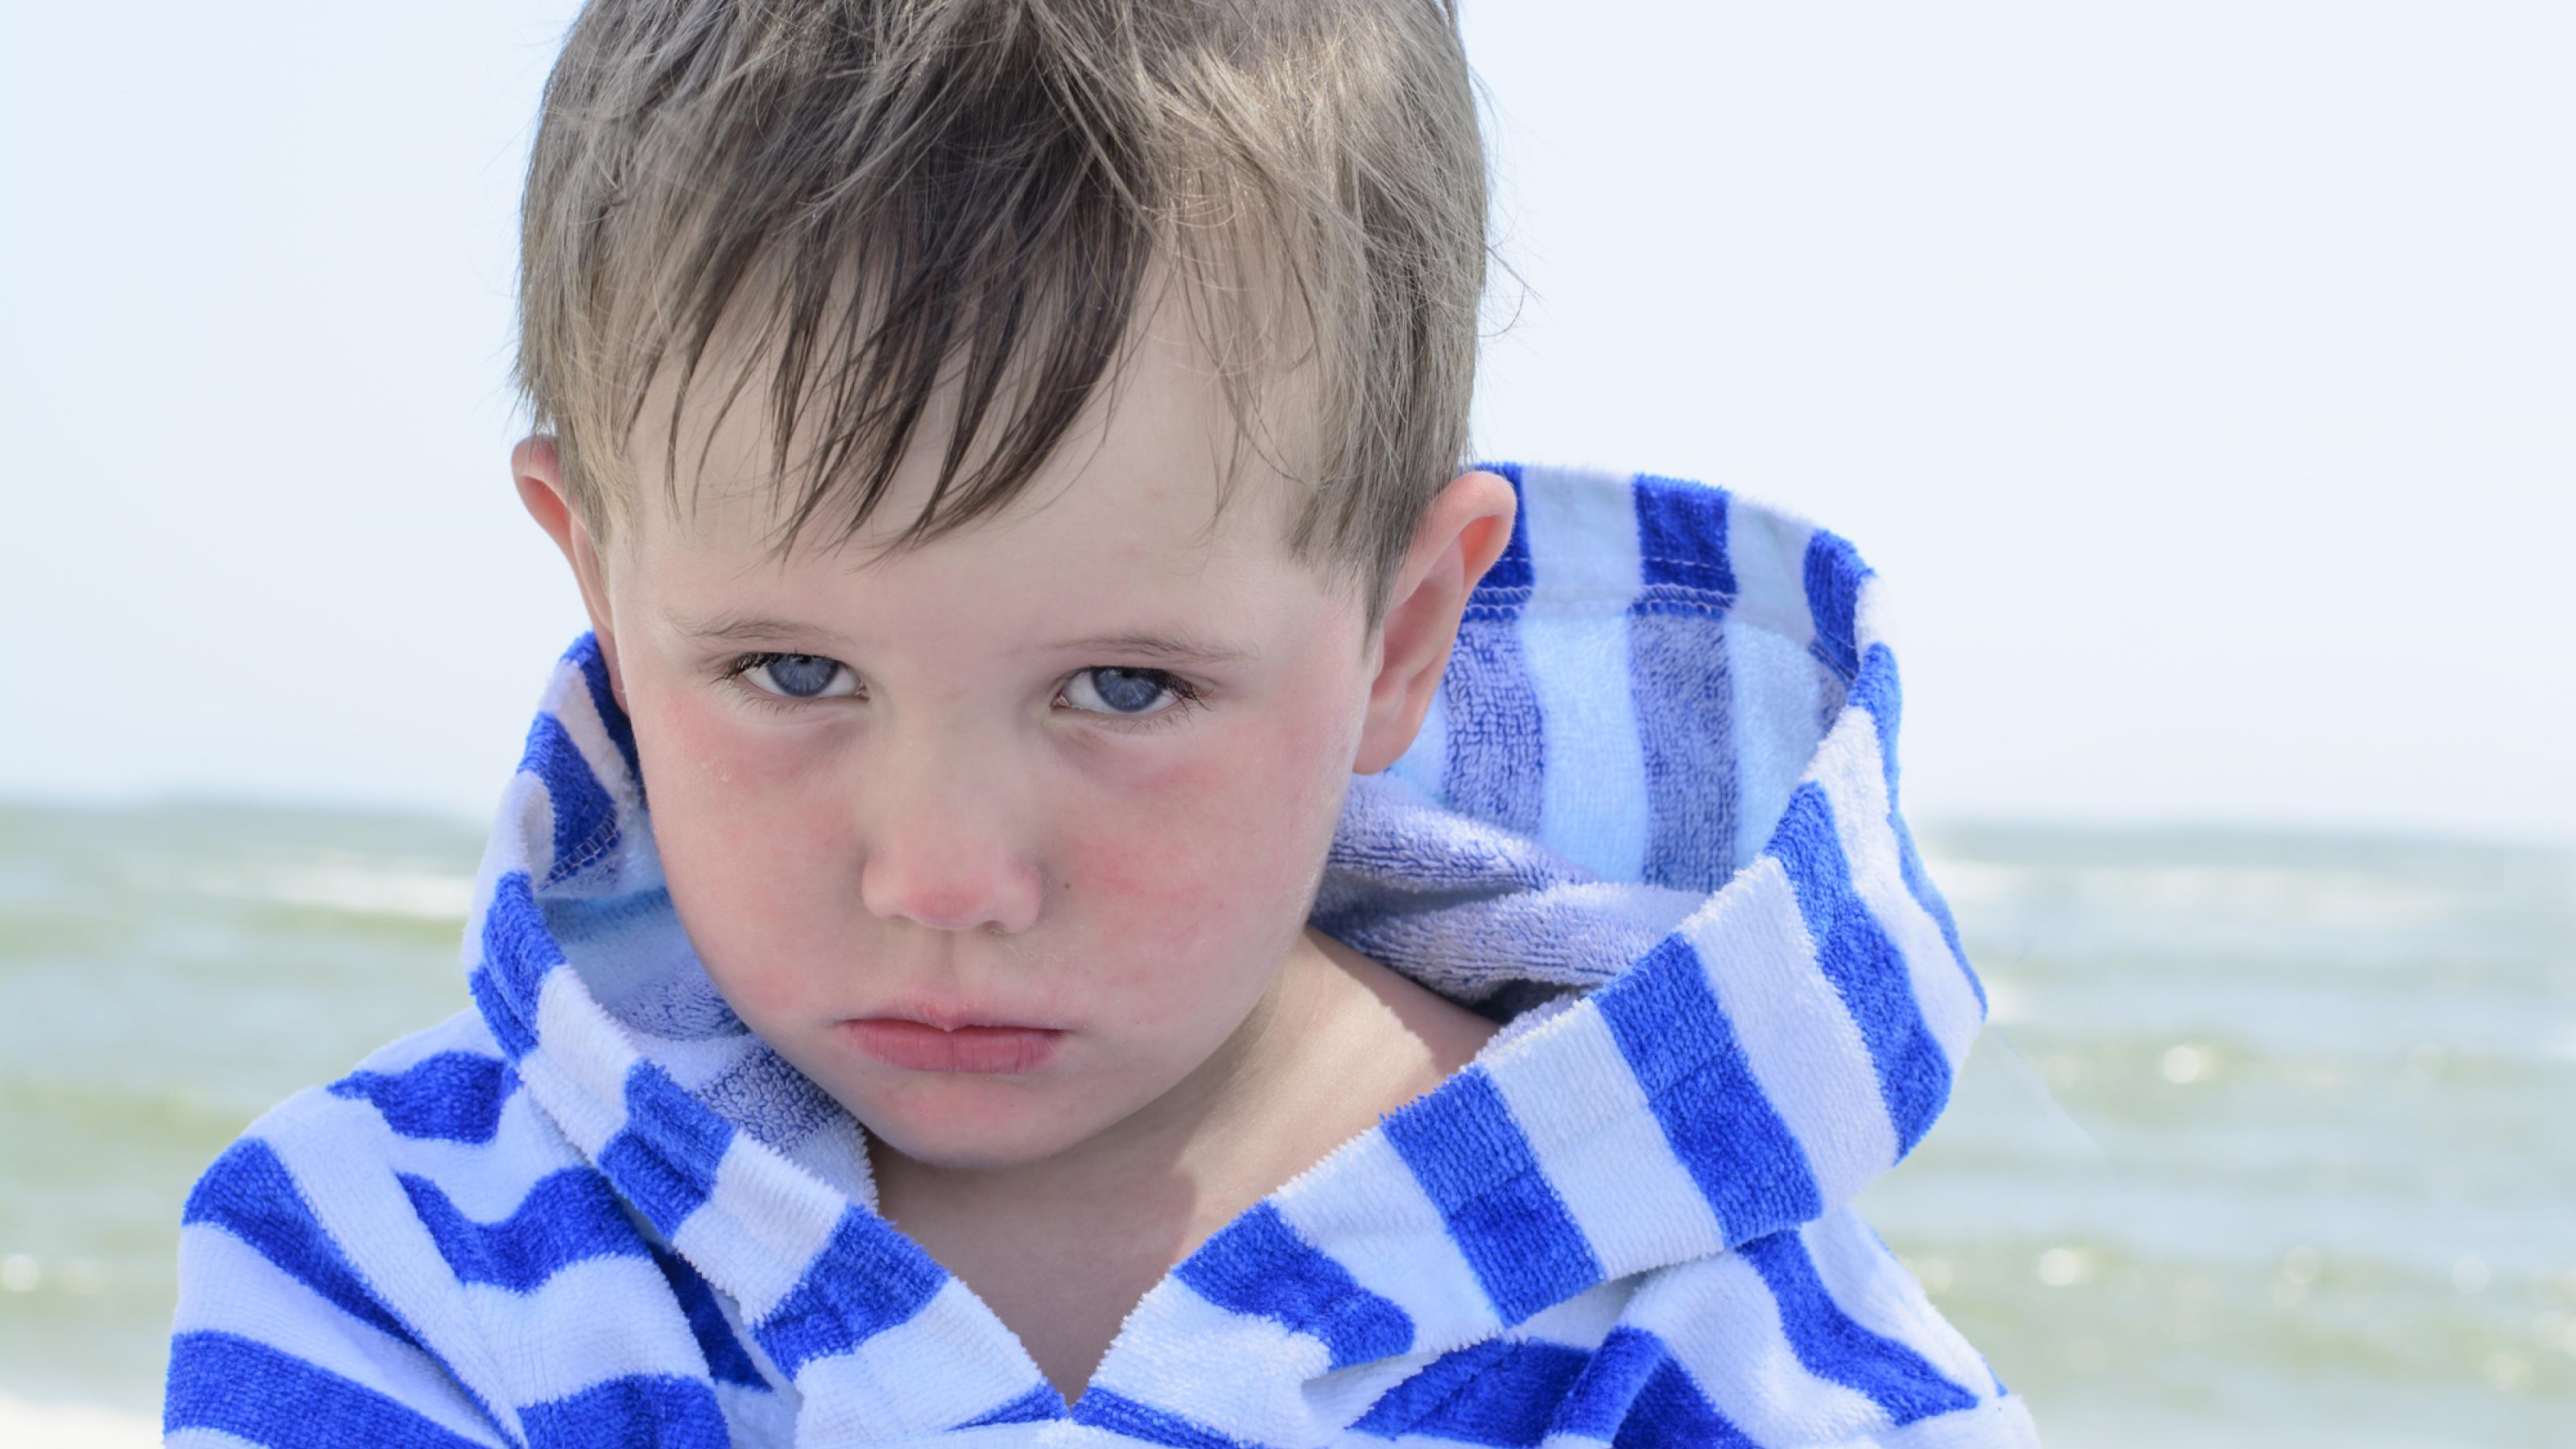 Ein Junge schaut traurig in die Kamera. Er trägt einen blau-weiß gestreiften Bademantel. Im Hintergrund ist das Meer zu sehen. Es ist ein sonniger Tag.